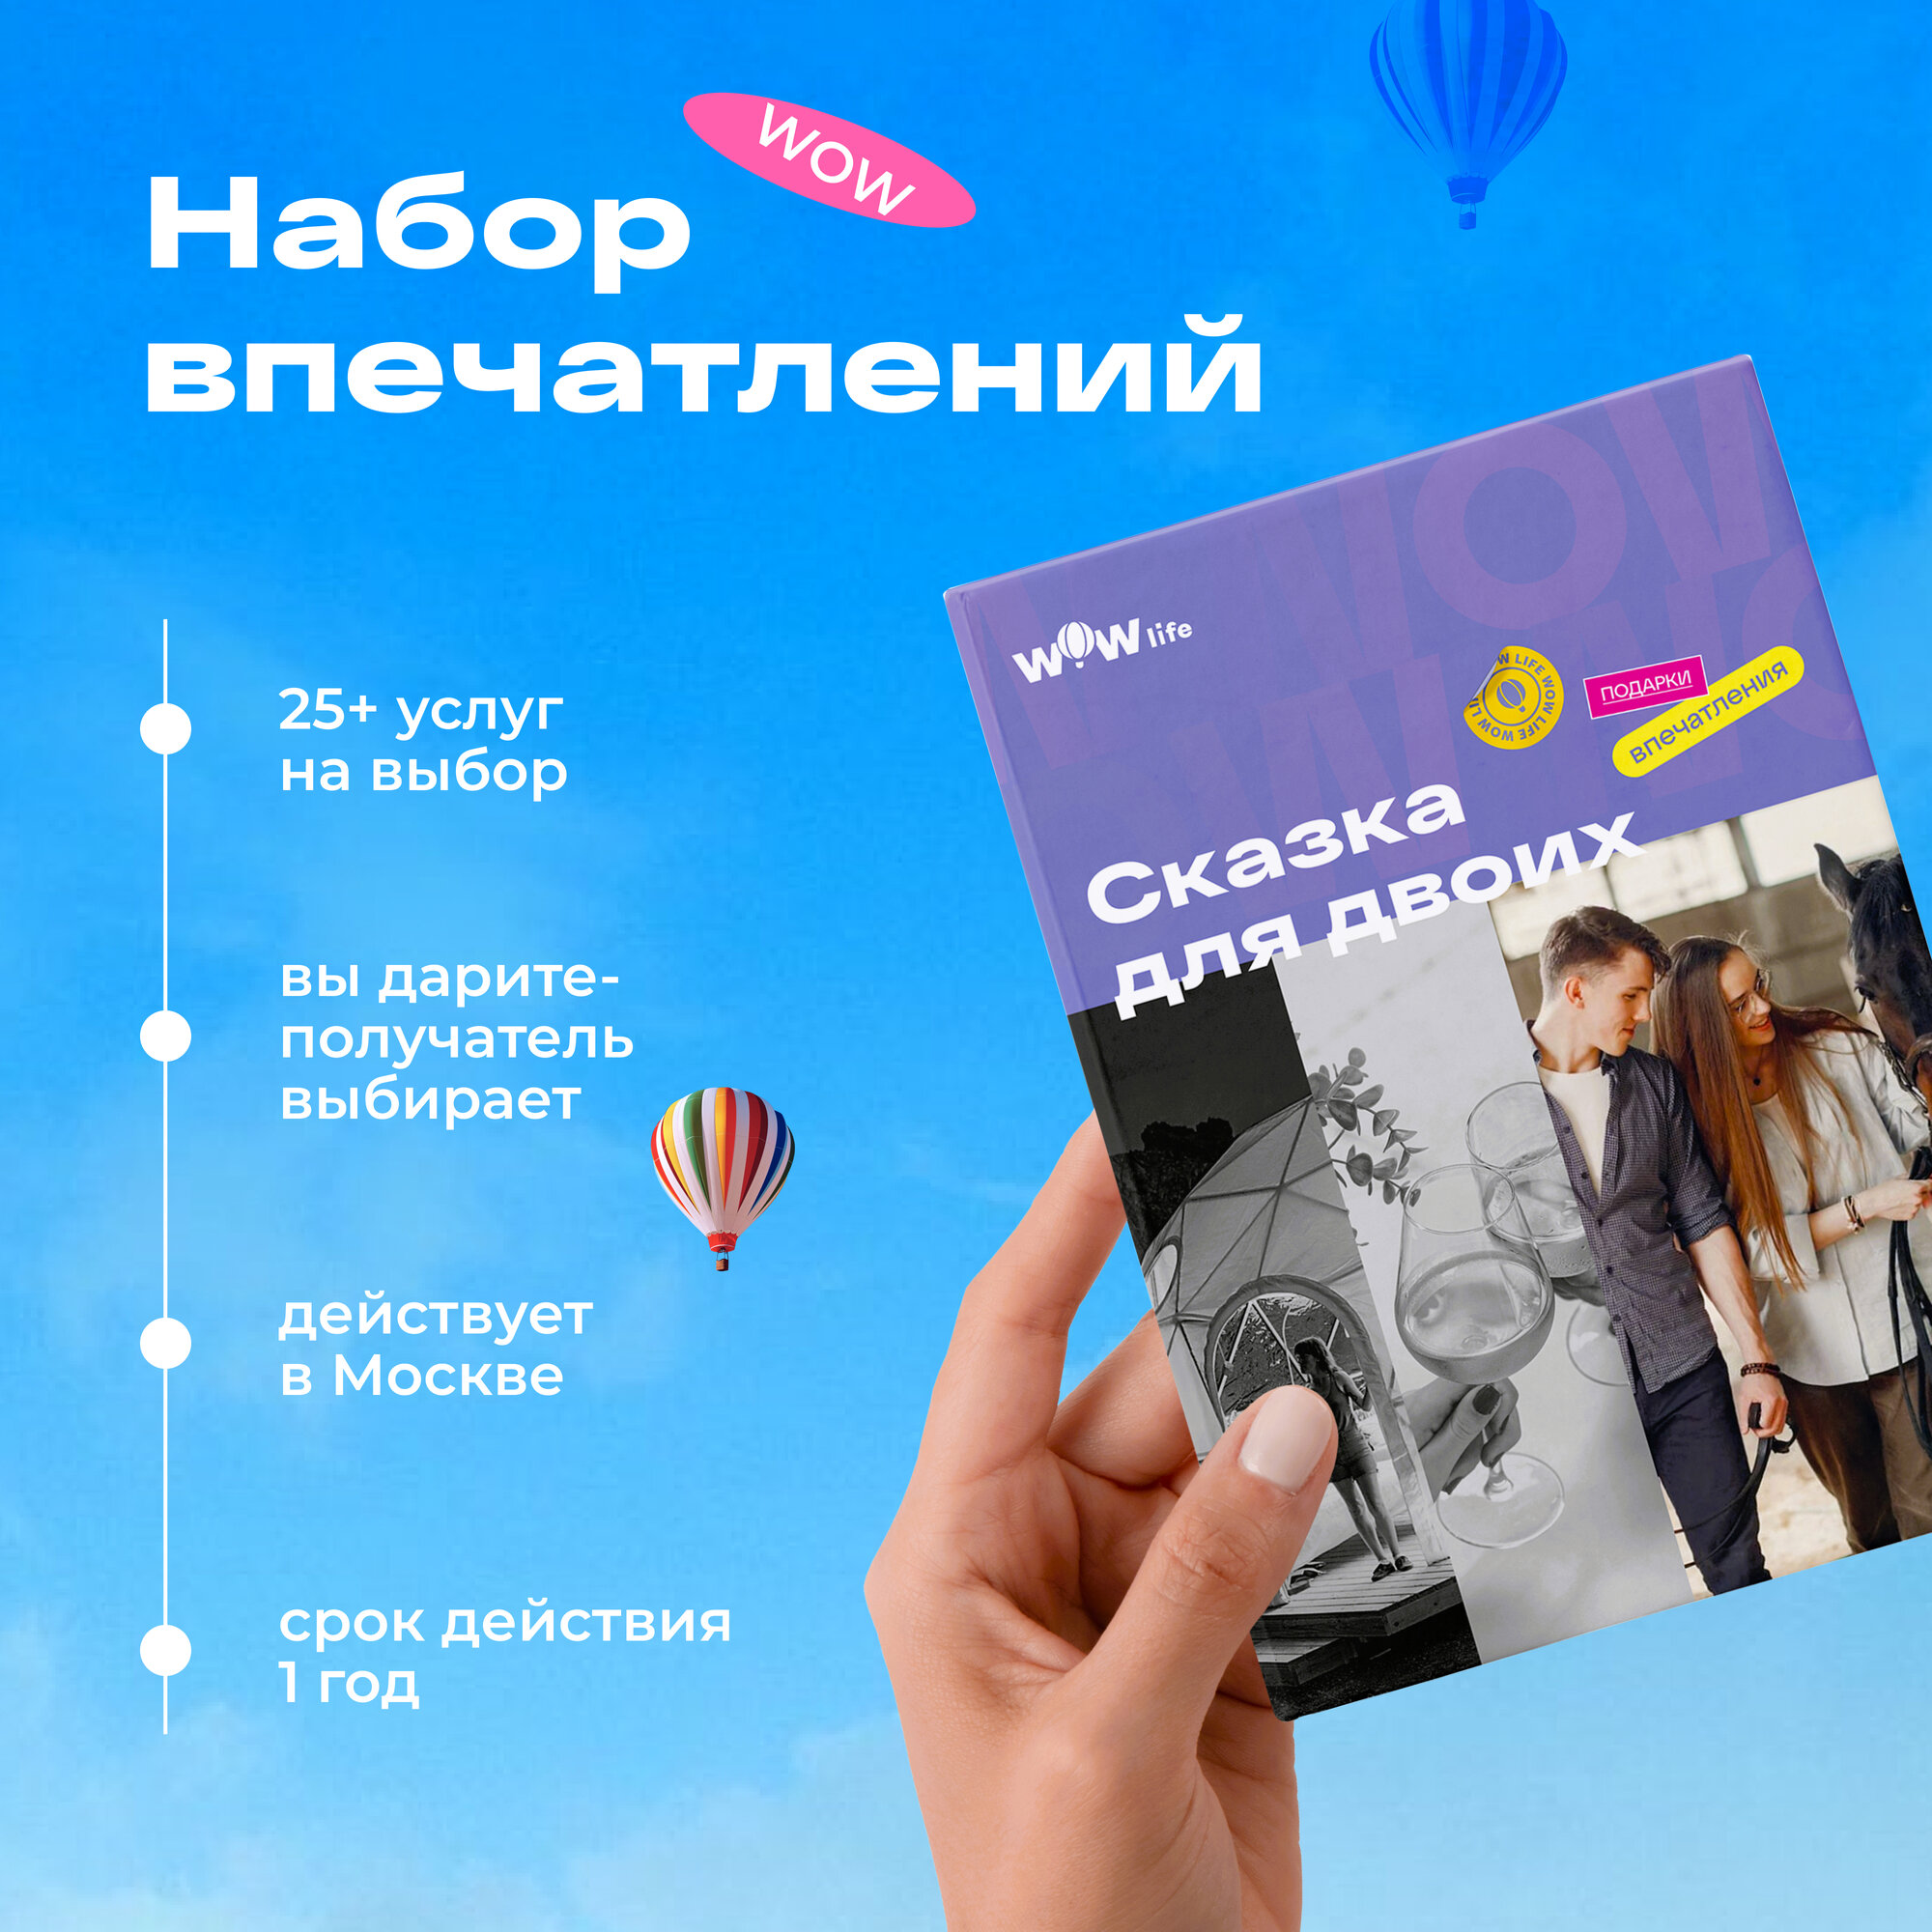 Подарочный сертификат WOWlife "Сказка для двоих"- набор из впечатлений на выбор, Москва